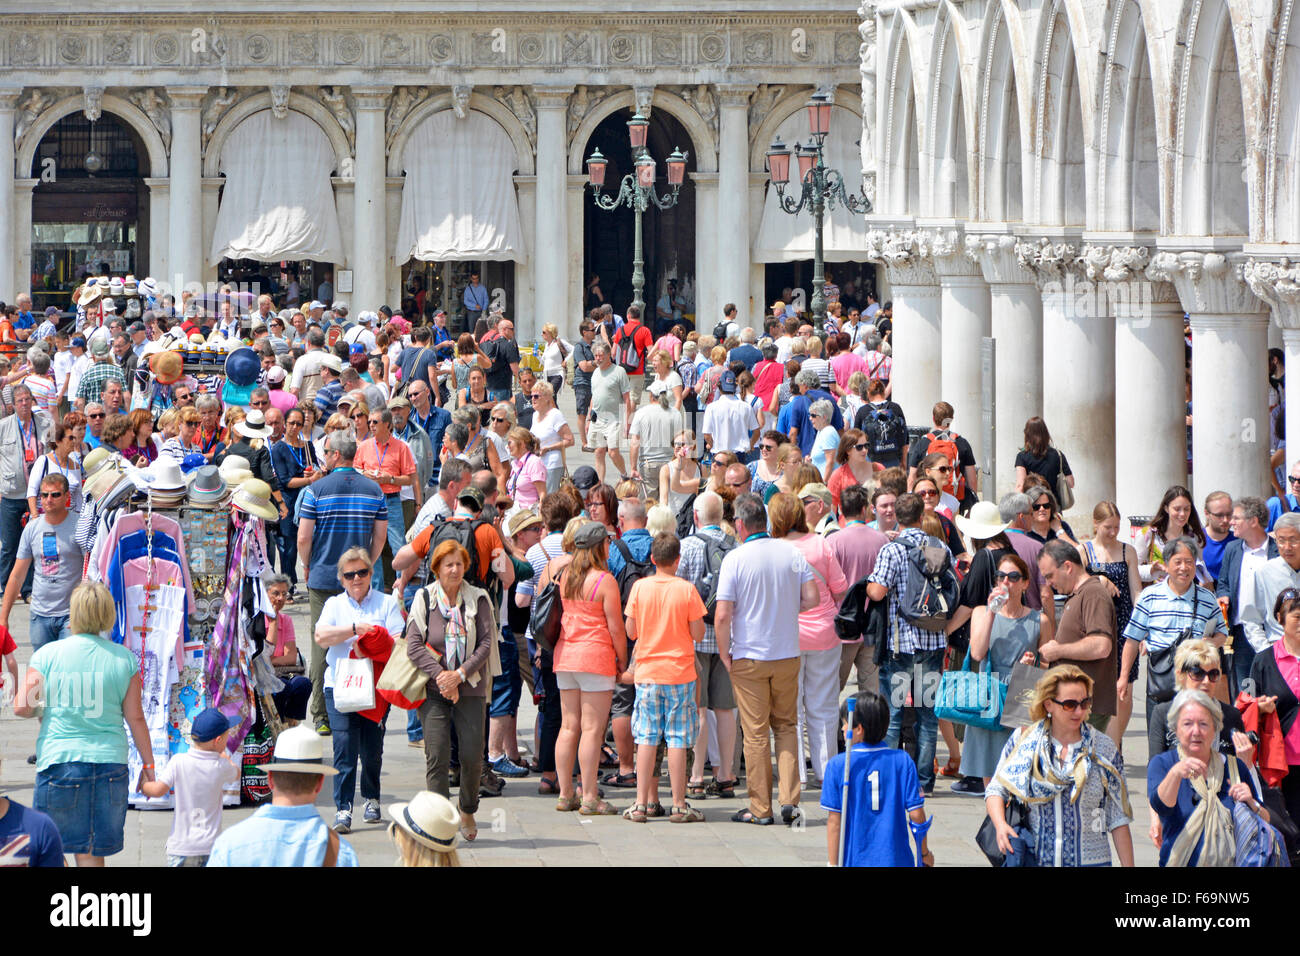 Venedig Menge von Touristen bei geschäftigen beliebten Sightseeing-Besucher Attraktion an der Riva degli Schiavoni Promenade in heißen Sommern Tag in Venetien Italien Stockfoto